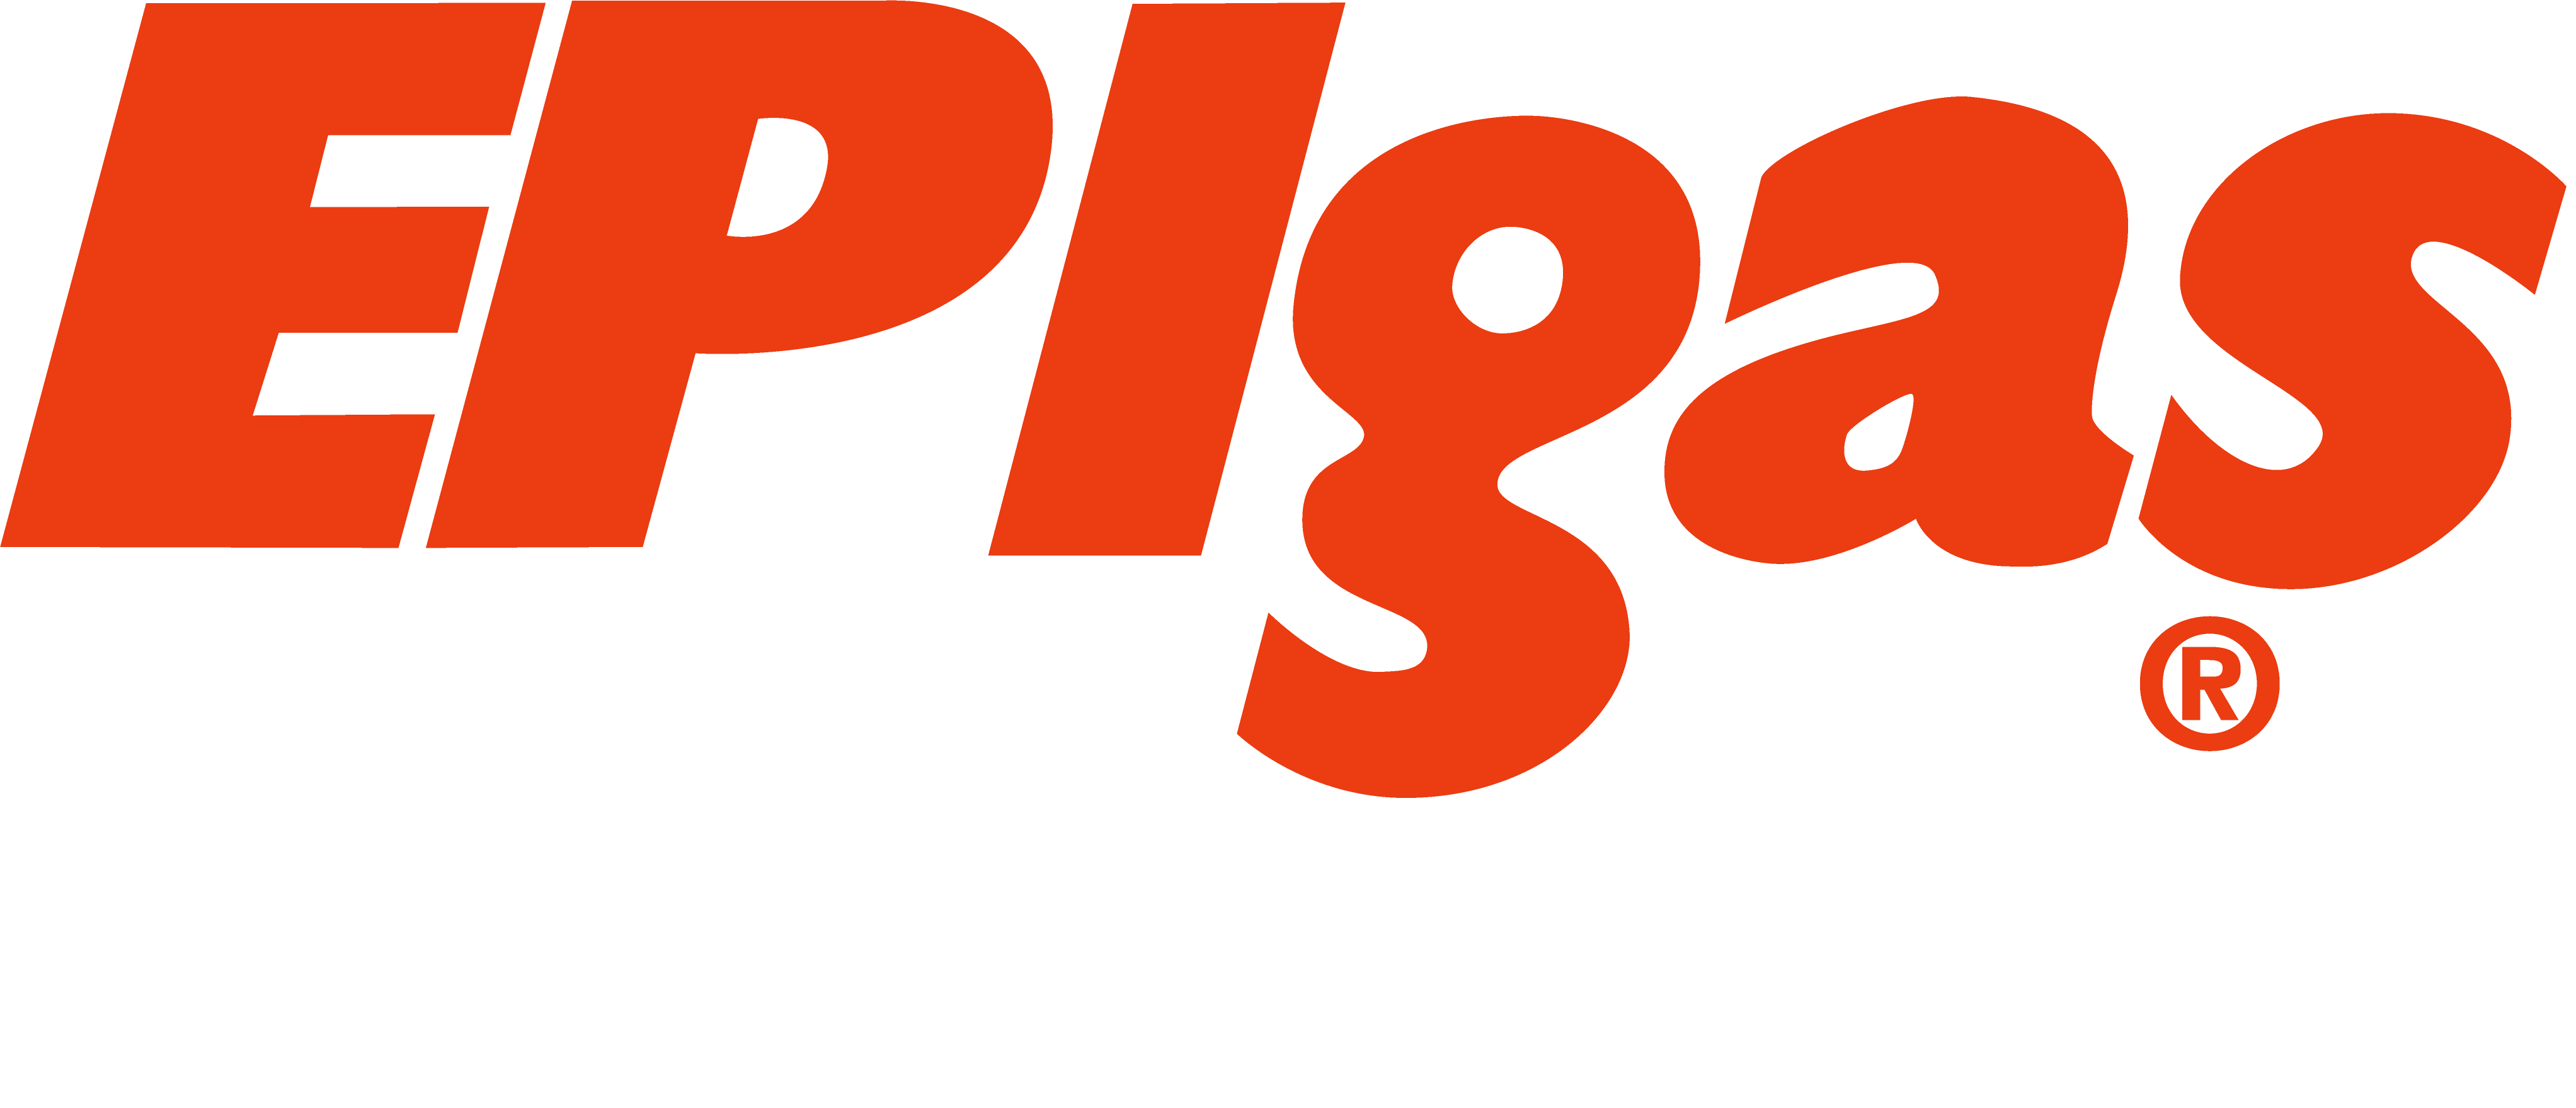 EPIgas online shop page